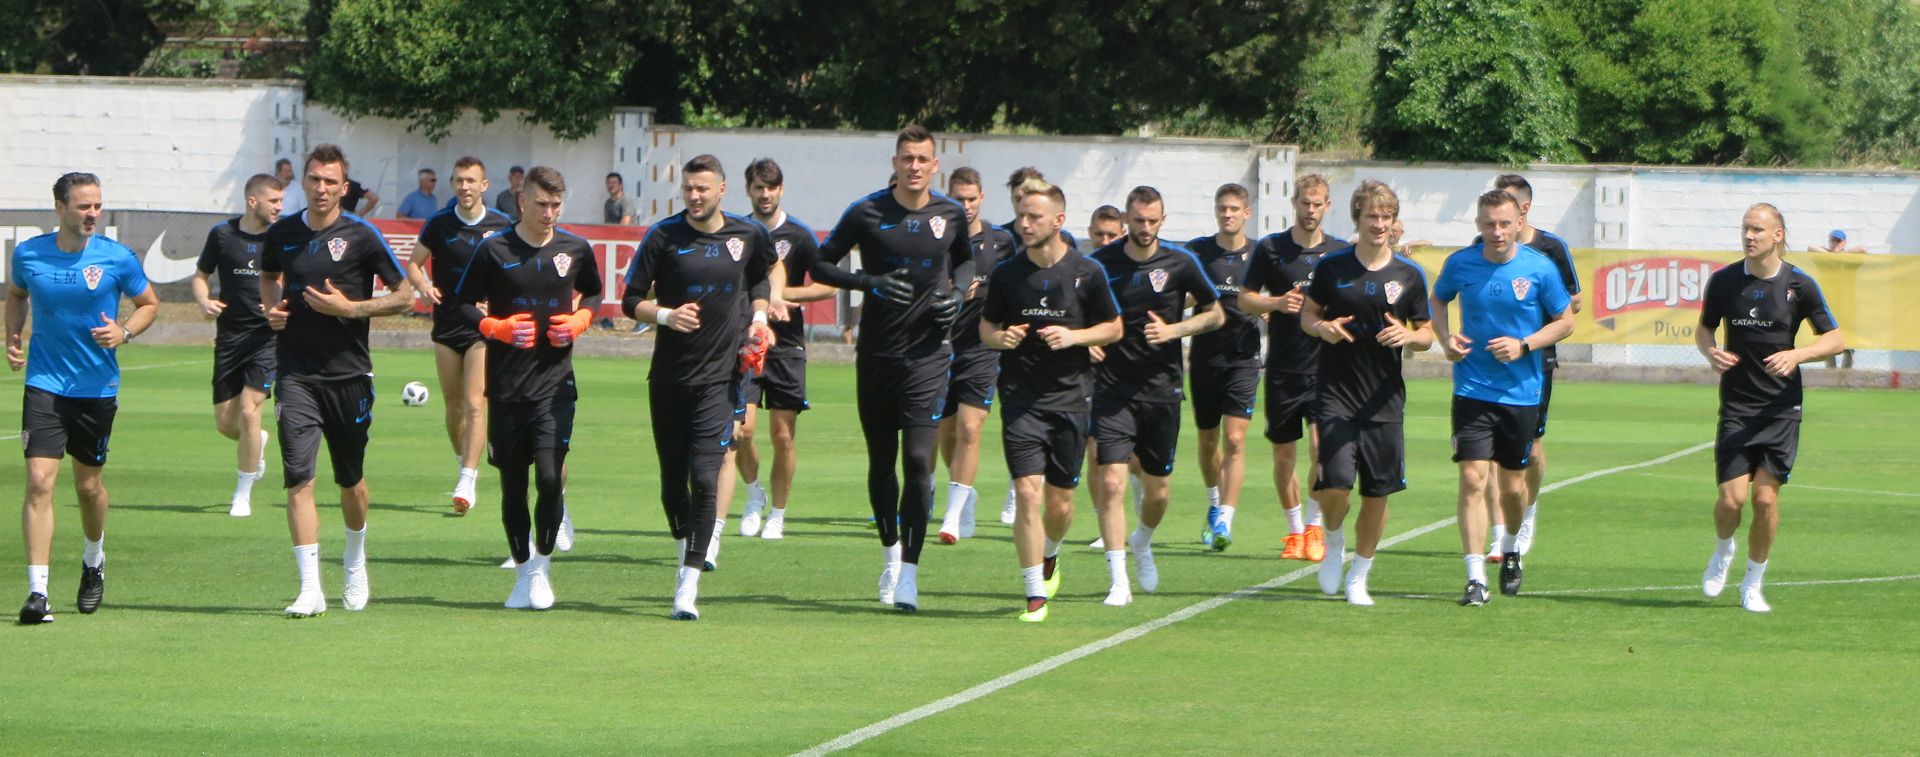 Rovinj, 27.05.2018 - Trening hrvatske nogometne reprezentacije na stadionu u Rovinju.
foto HINA/ Daniel SPONZA/ ik